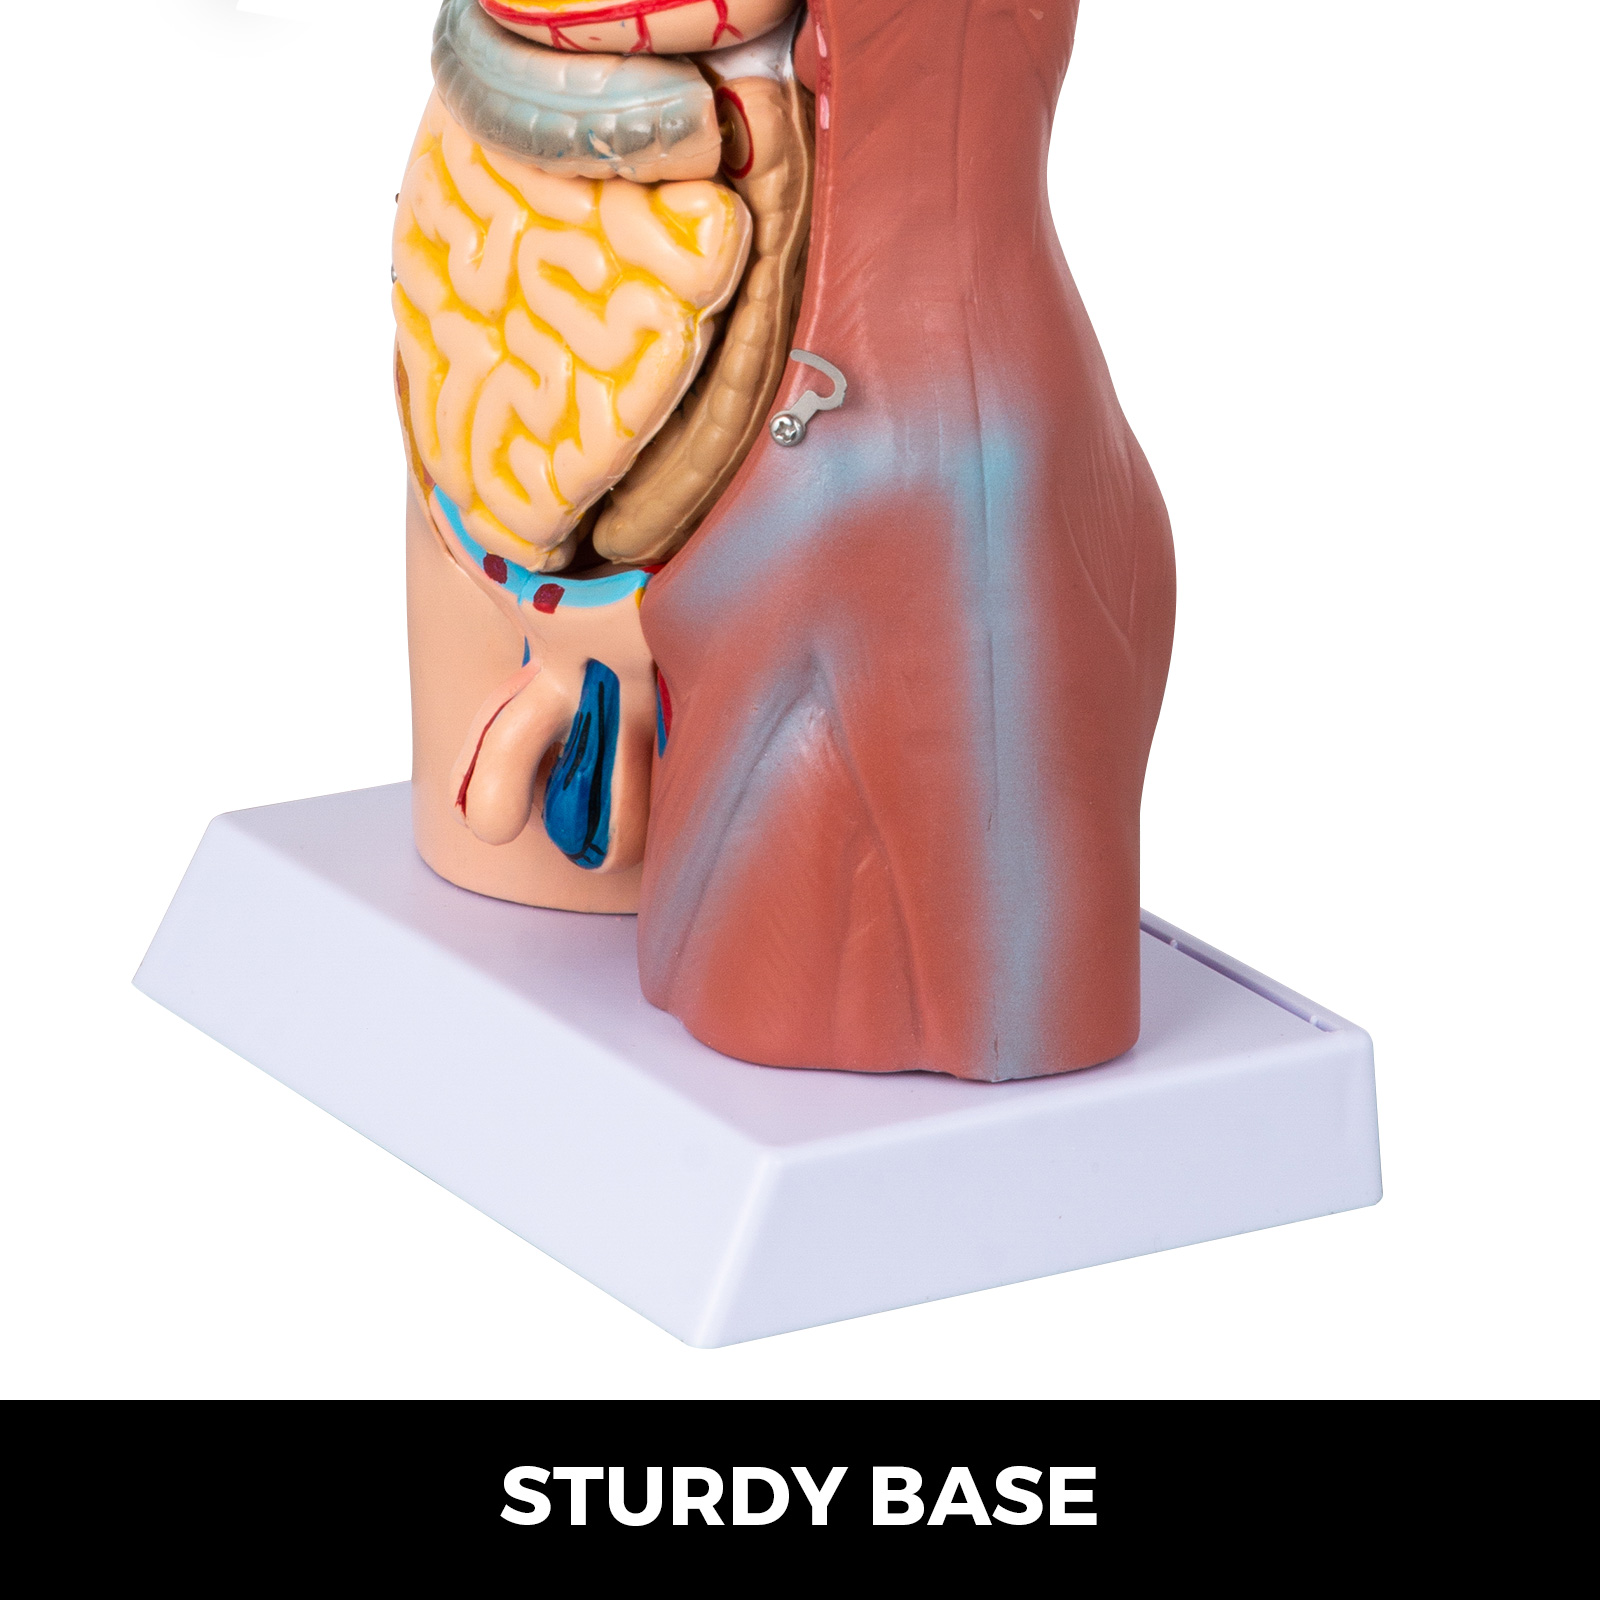 VEVOR 45 см Унісекс Анатомічна модель тулуба з ПВХ Модель людського тіла Анатомічна модель тулуба з 23 частинами для студентів-медиків, лікарів та викладачів